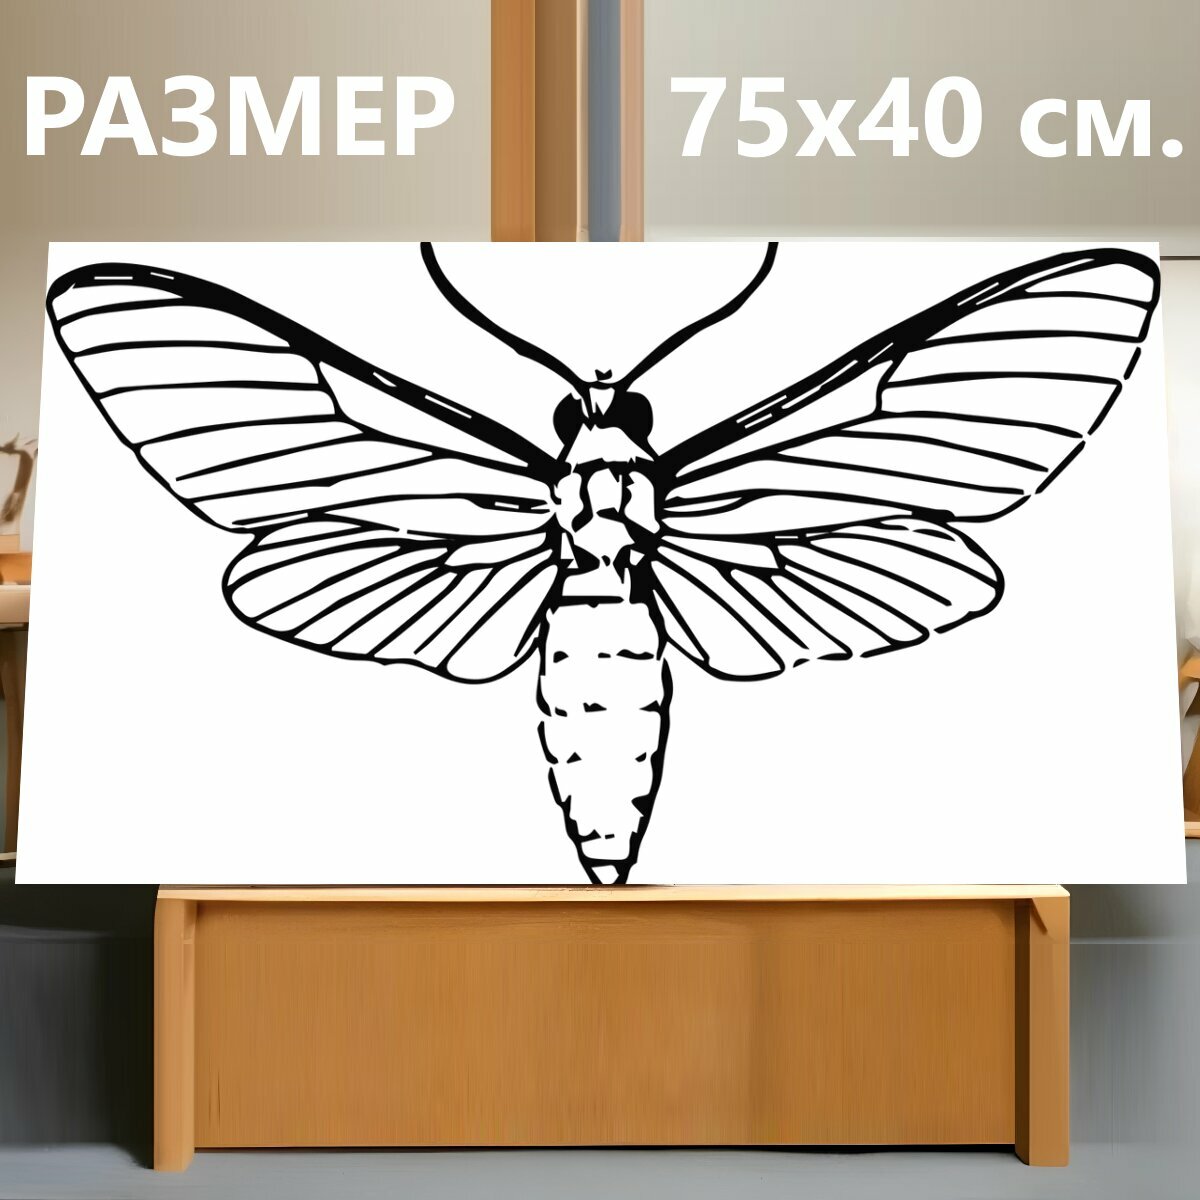 Картина на холсте "Моль, насекомое, животное" на подрамнике 75х40 см. для интерьера